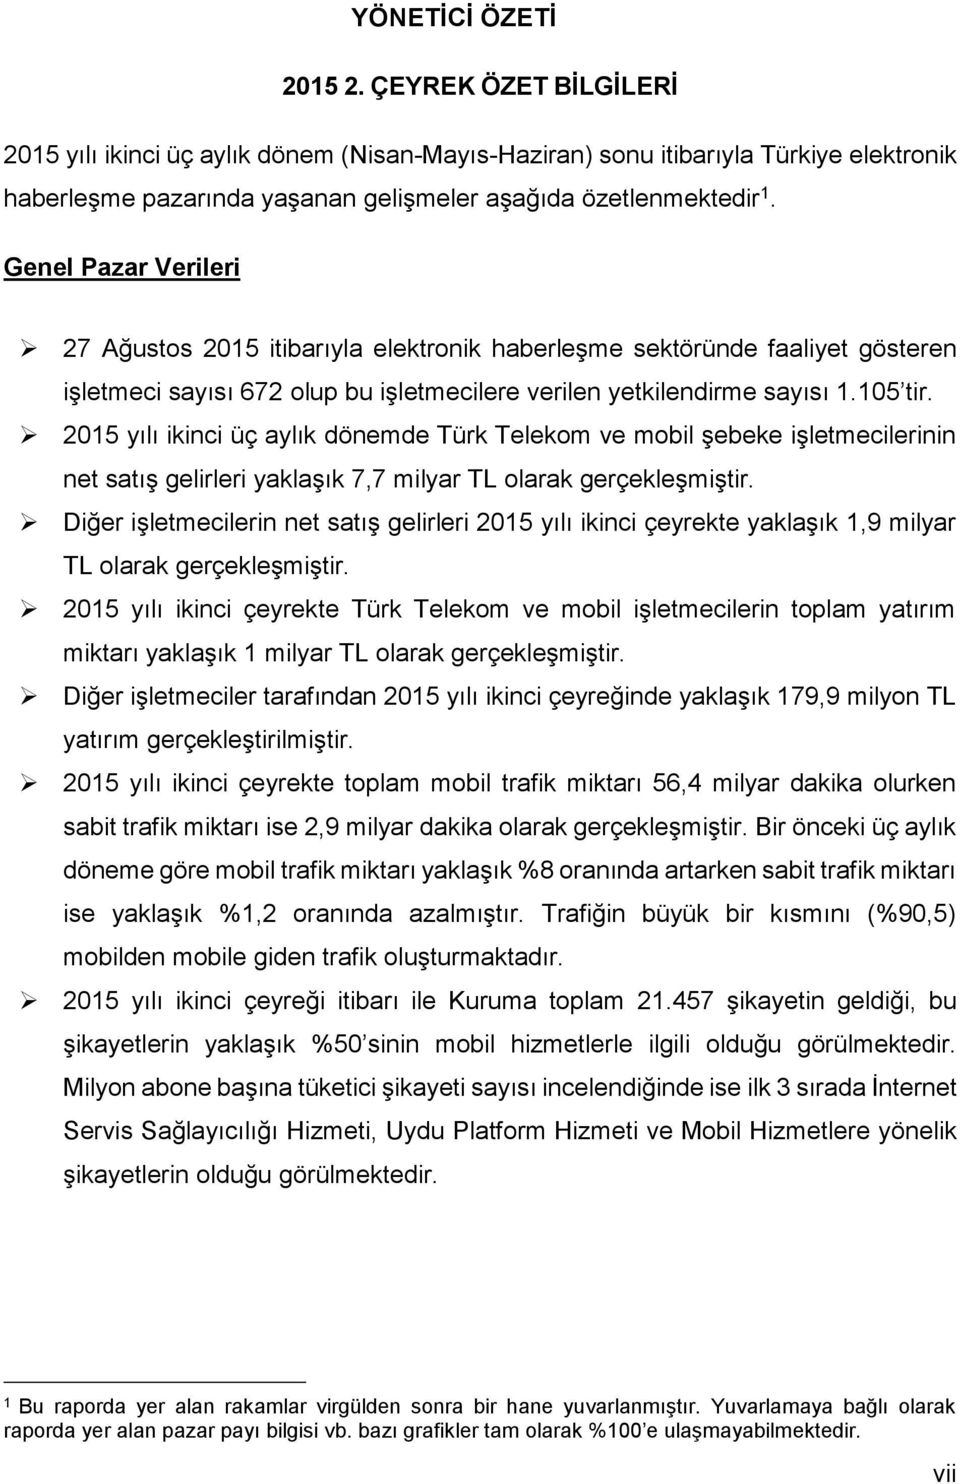 215 yılı ikinci üç aylık dönemde Türk Telekom ve mobil şebeke işletmecilerinin net satış gelirleri yaklaşık 7,7 milyar TL olarak gerçekleşmiştir.